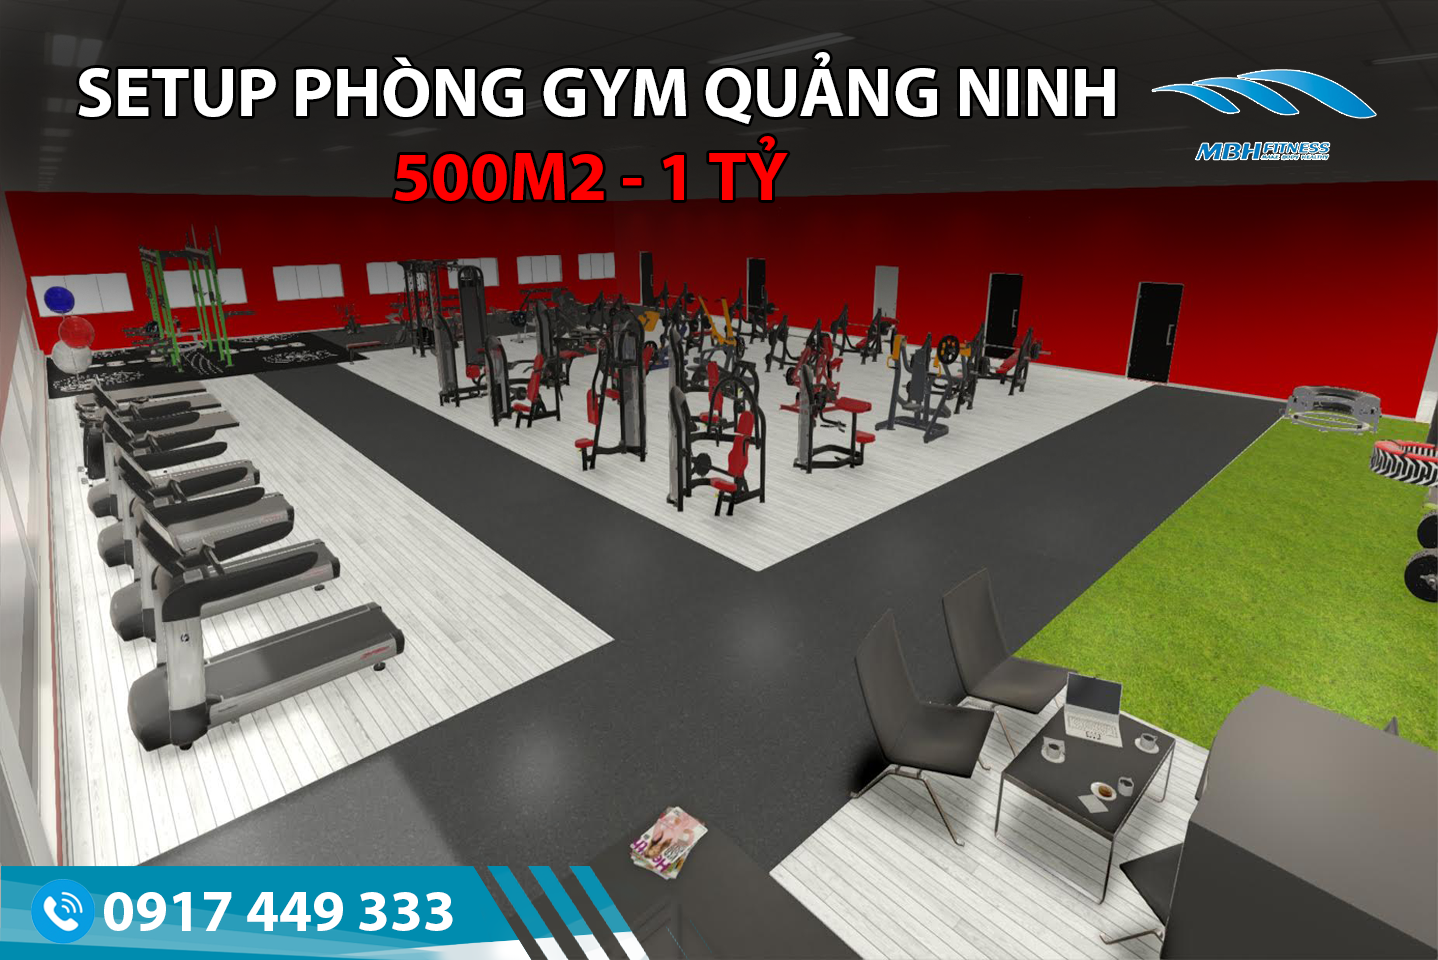 Setup phòng Gym 500m2, 1 tỷ tại Quảng Ninh